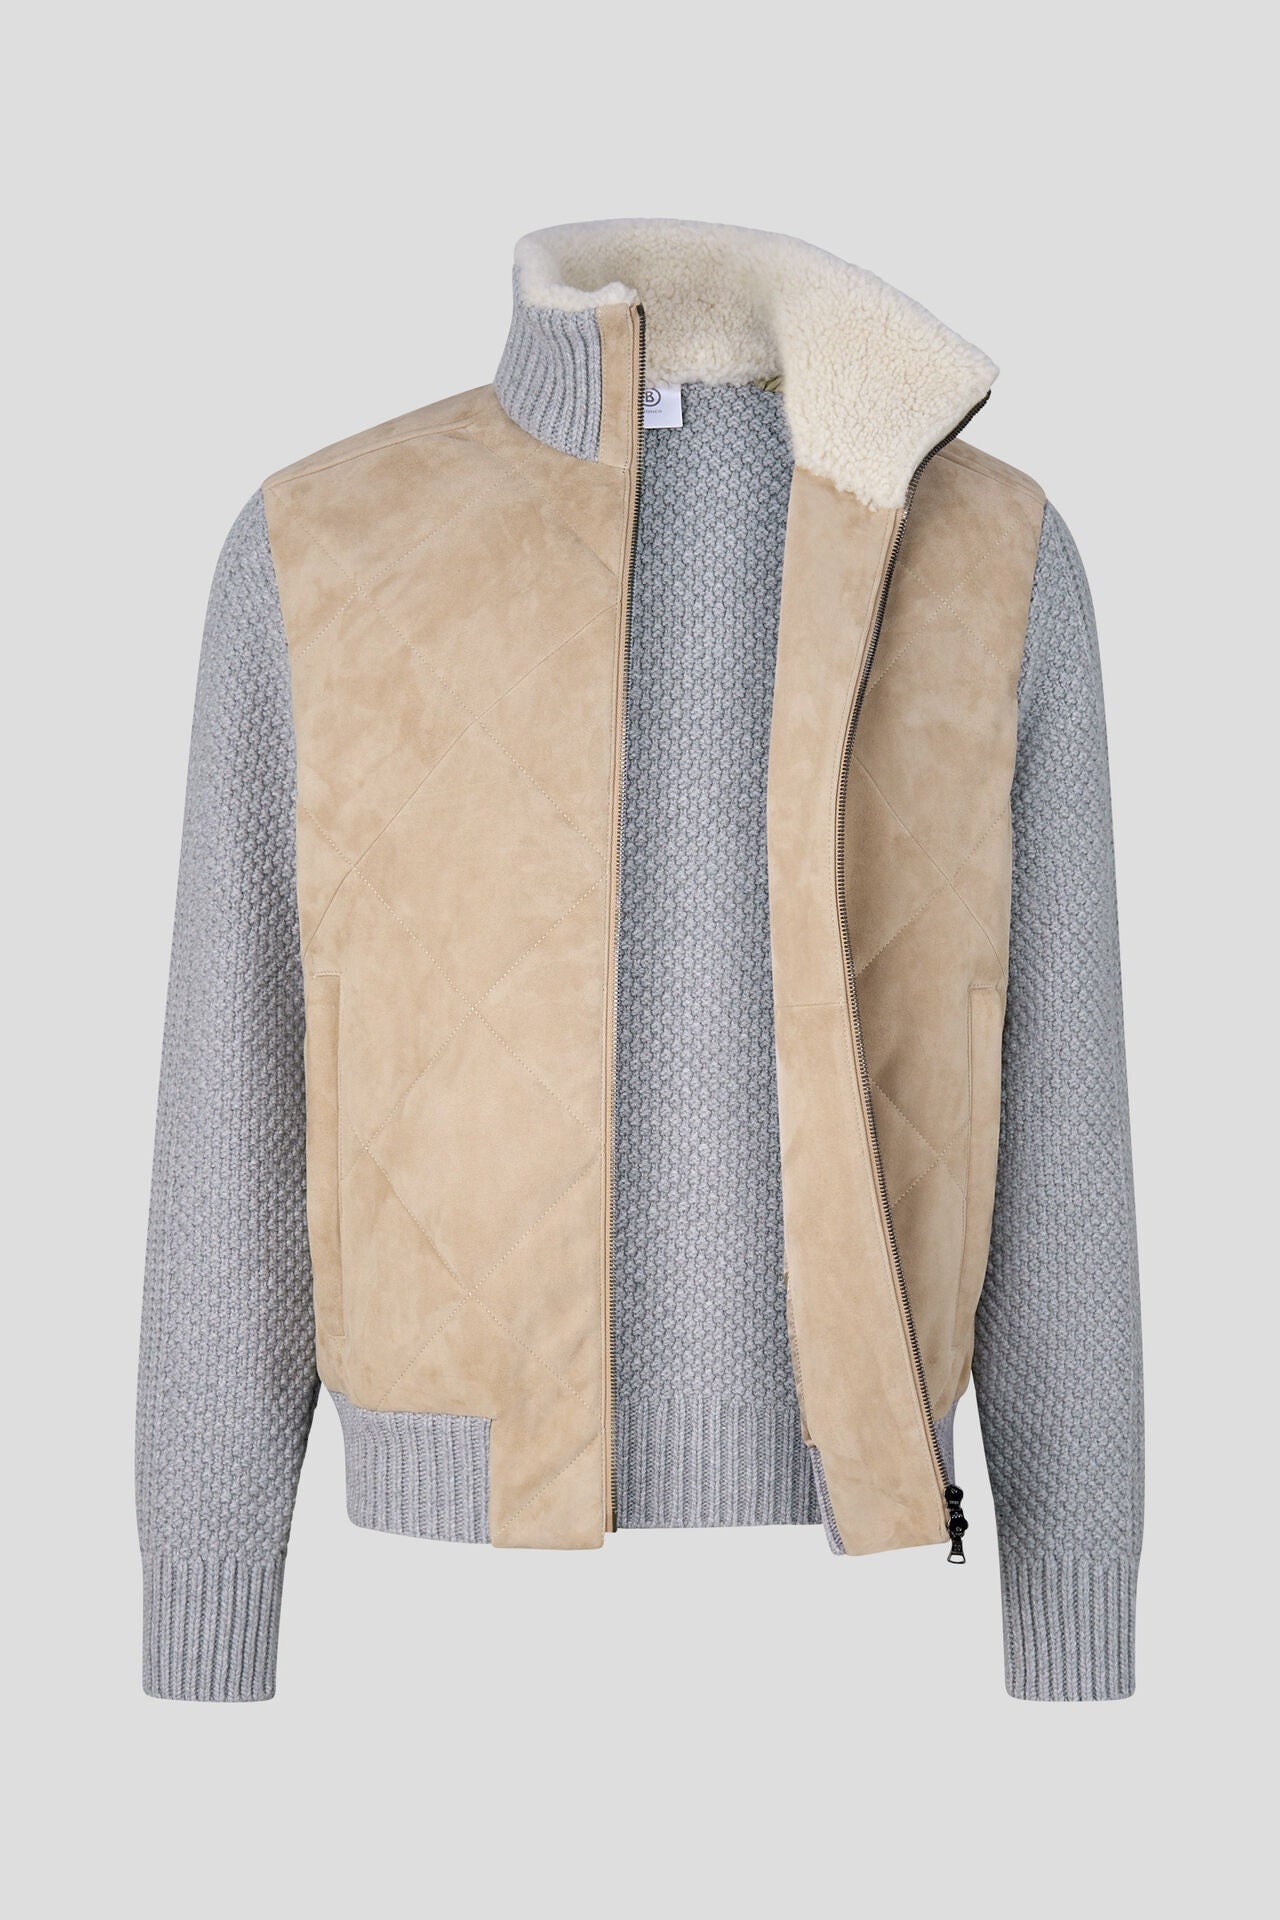 Sandro Leather knit jacket